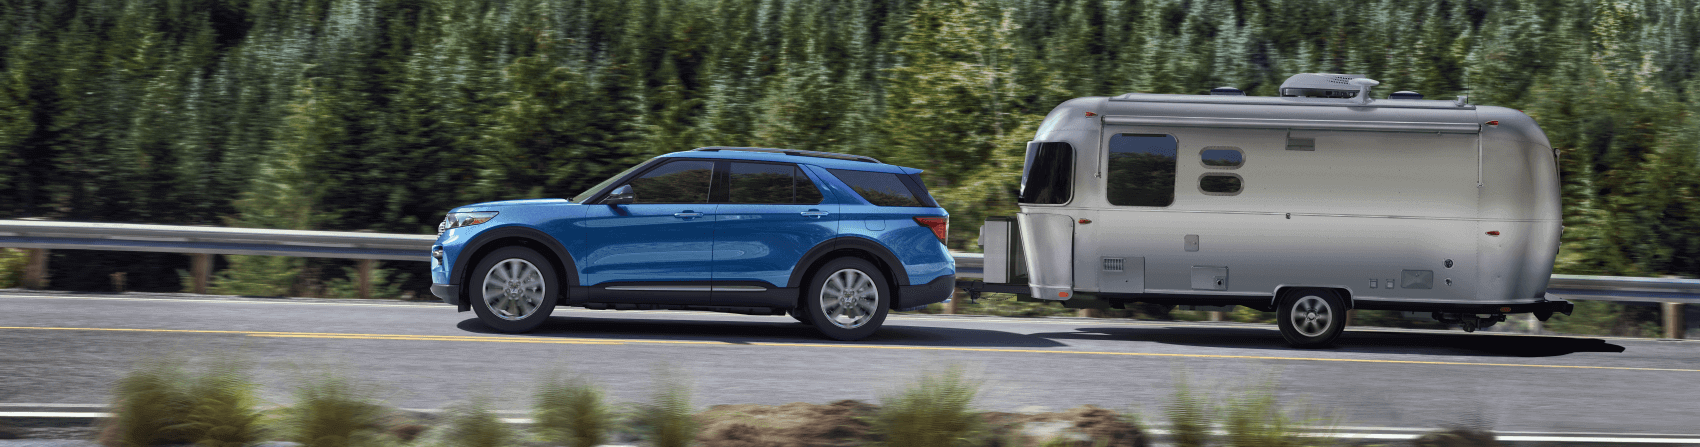 2021 Ford Explorer Blue Towing Camper